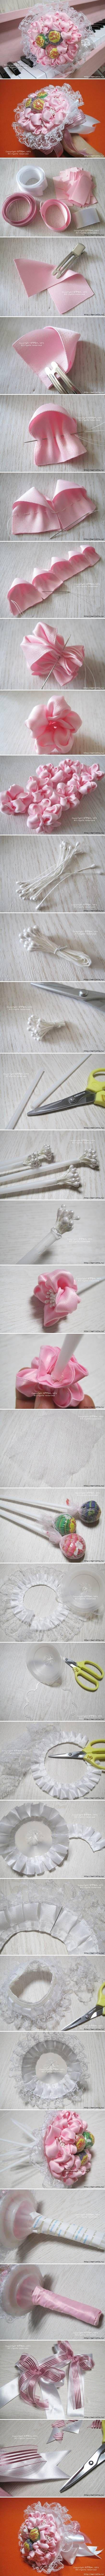 زفاف - DIY Ribbon And Lace Candy Bouquet DIY Projects 